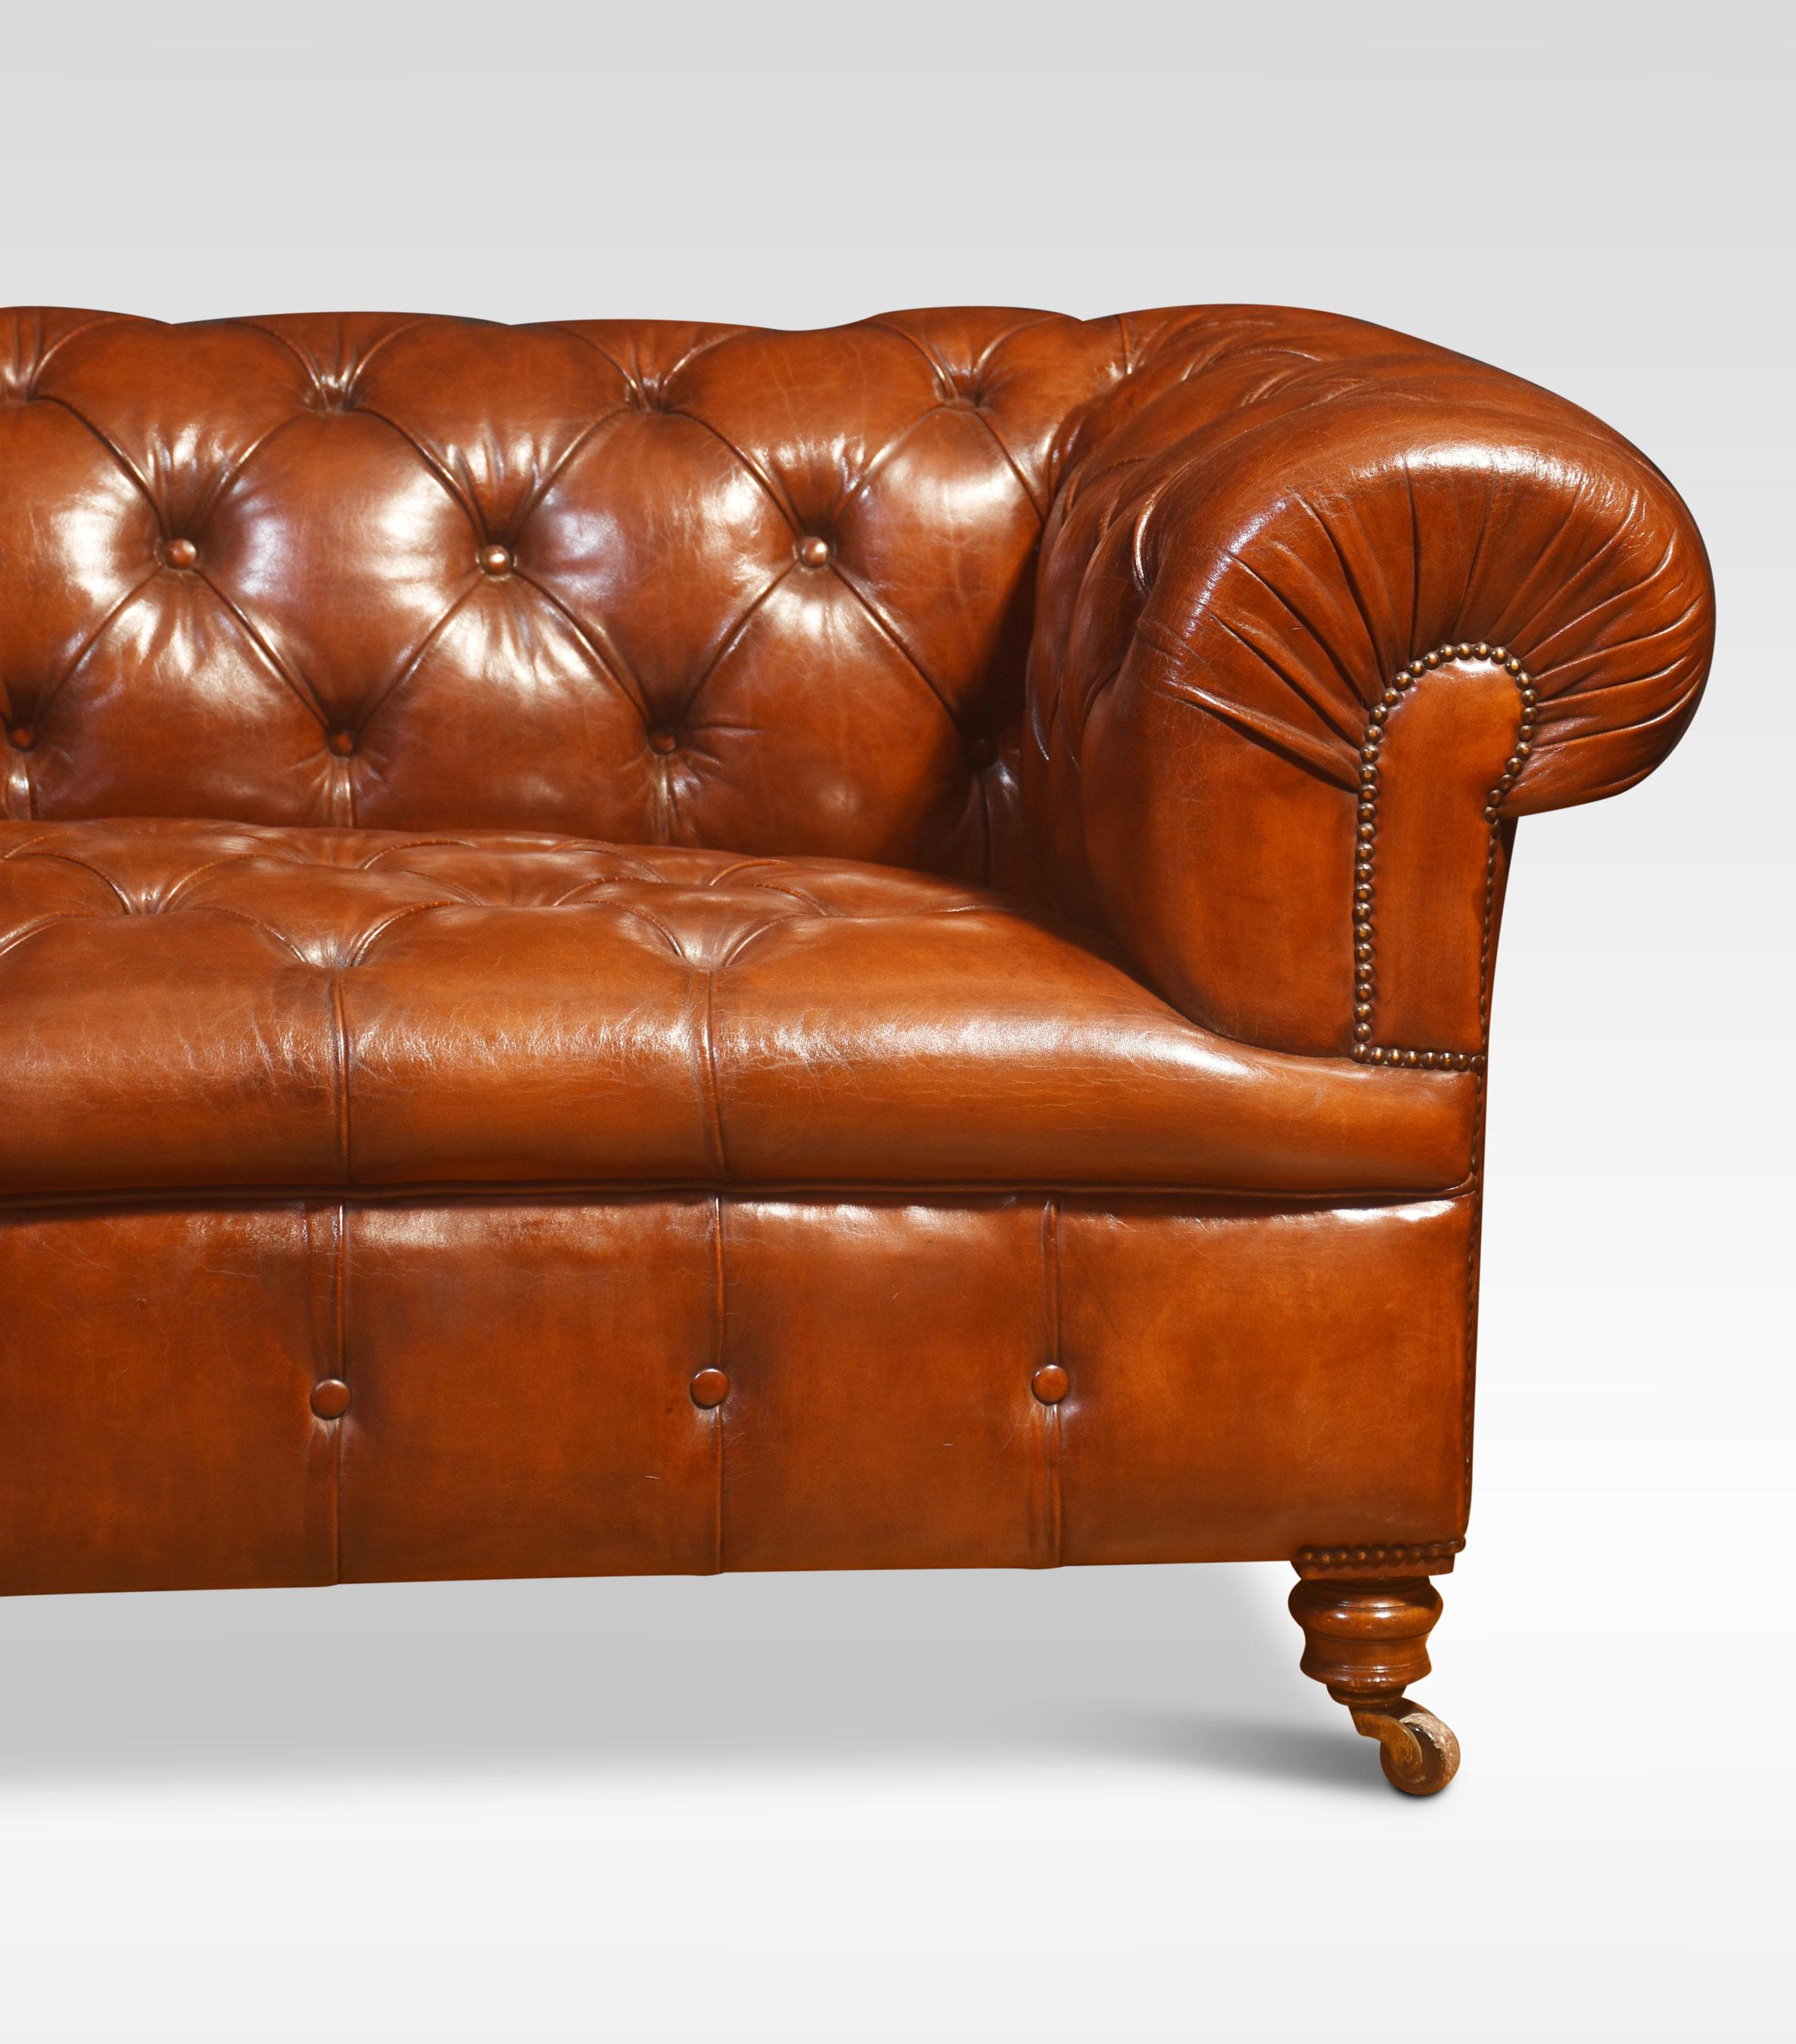 Grand canapé Chesterfield en cuir marron, avec dossier et assise profondément boutonnés, reposant sur des pieds tournés avec des roulettes en céramique en laiton. Bon état solide, le cuir a été remplacé et teint à la main.
Dimensions
Hauteur 29